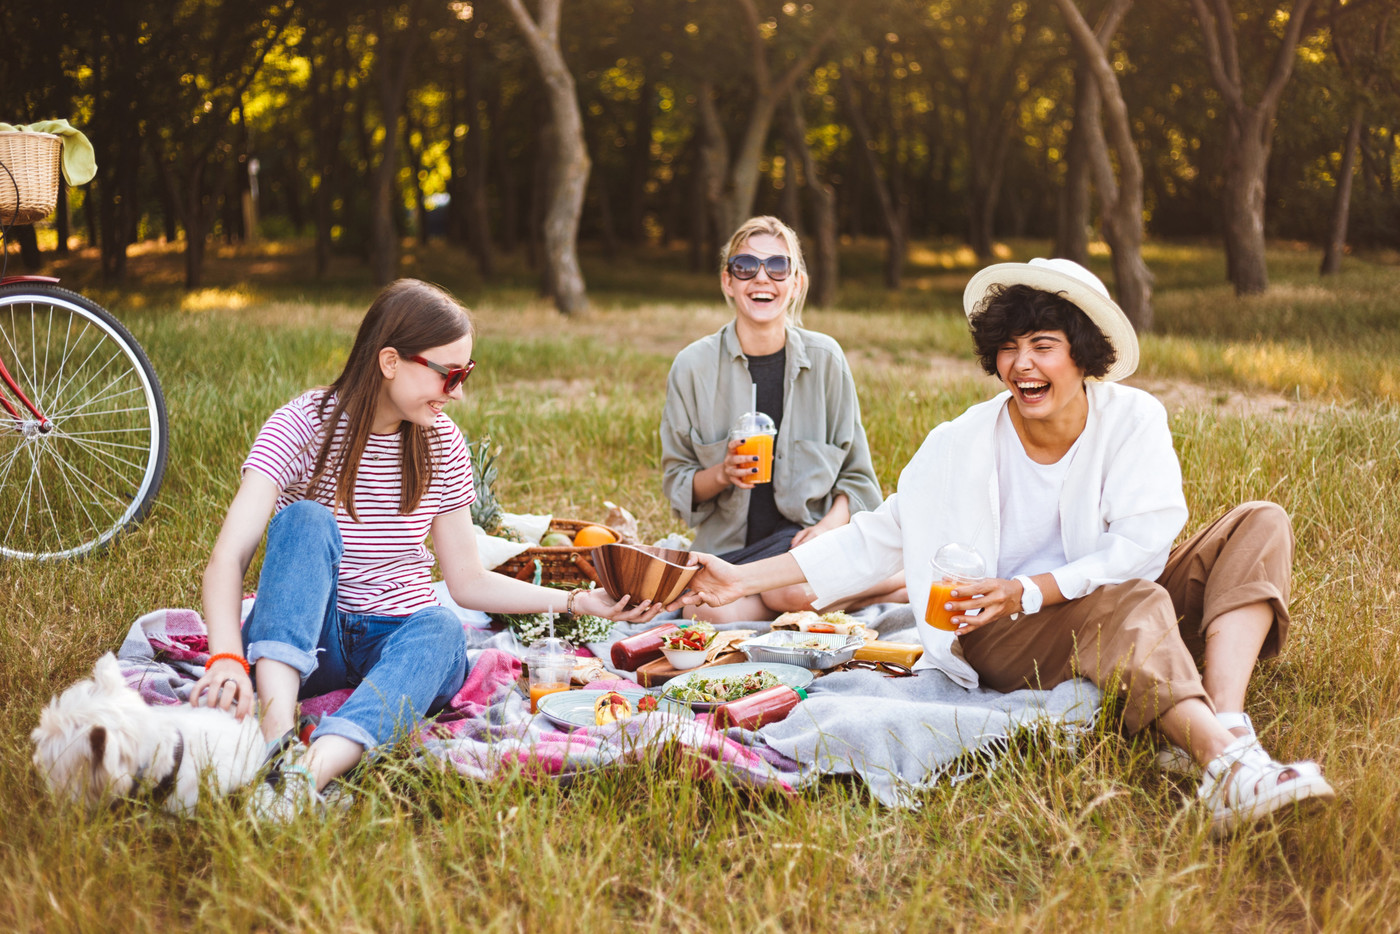 Picknicken: Mit leckerem Essen und guter Gesellschaft lässt sich der Tag geniessen.